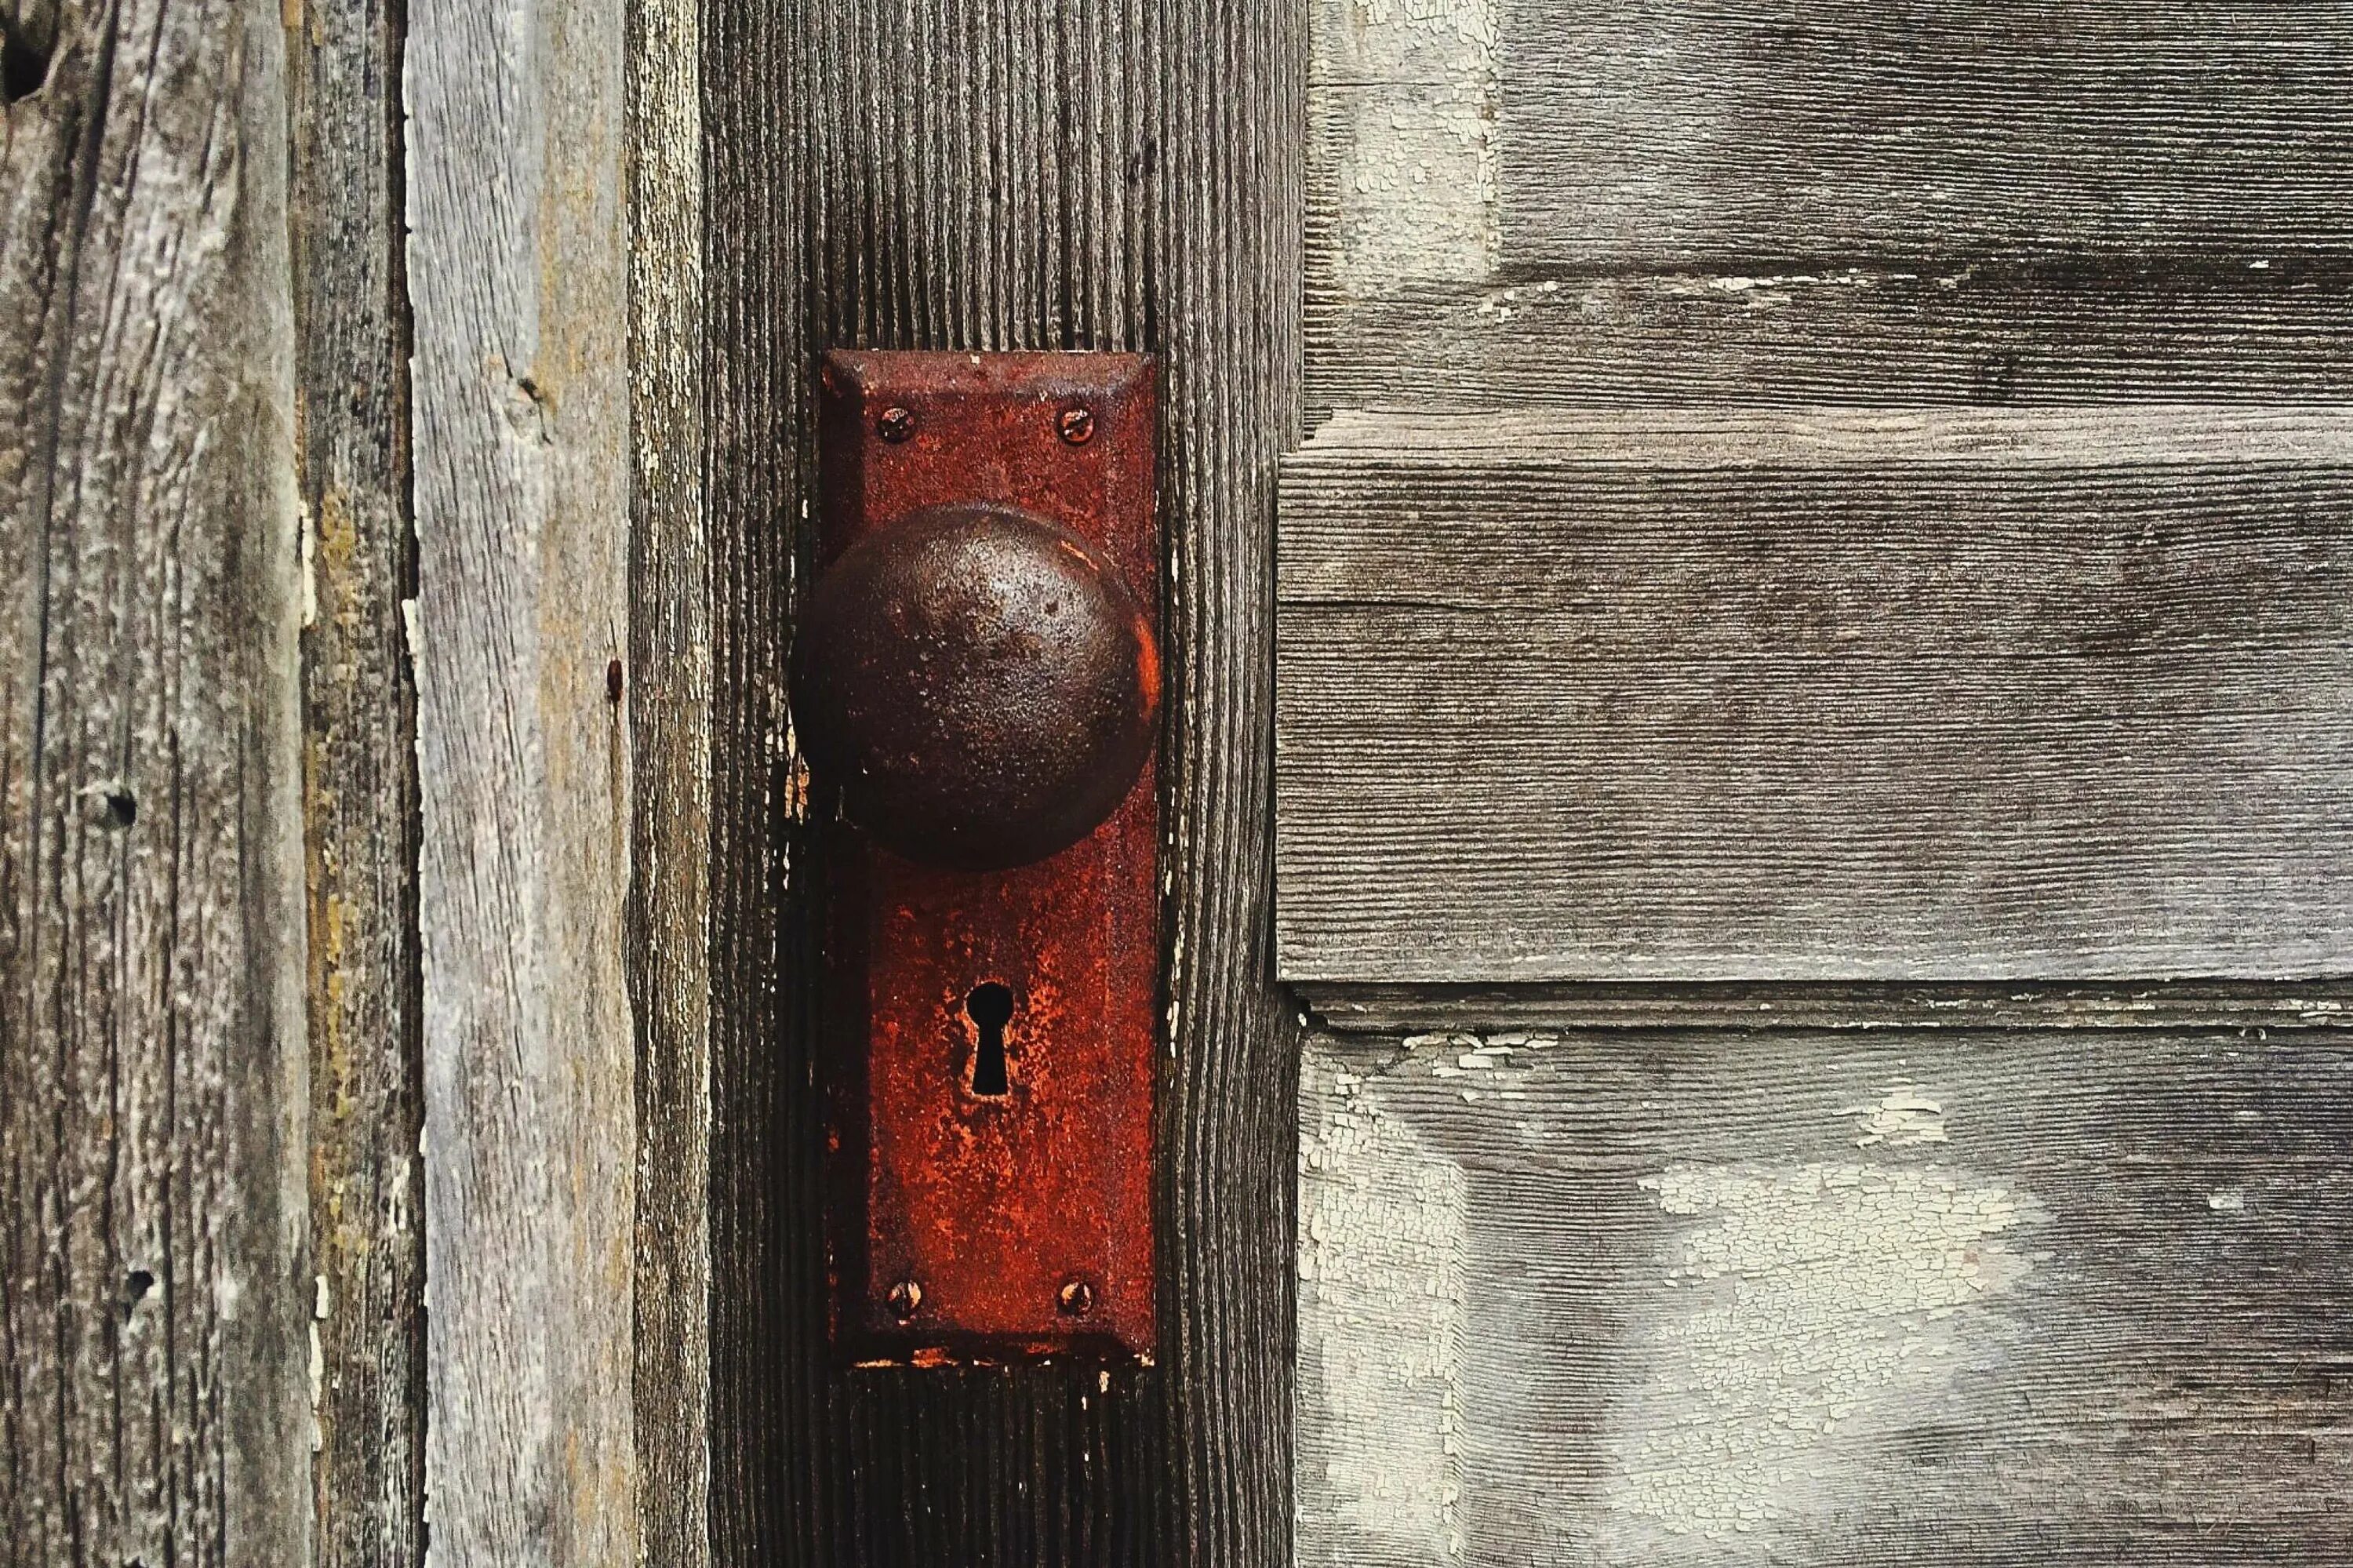 Запирает дверь на ключ. Запертая дверь. Закрытая дверь. Старая дверь. Дверь с замочной скважиной.